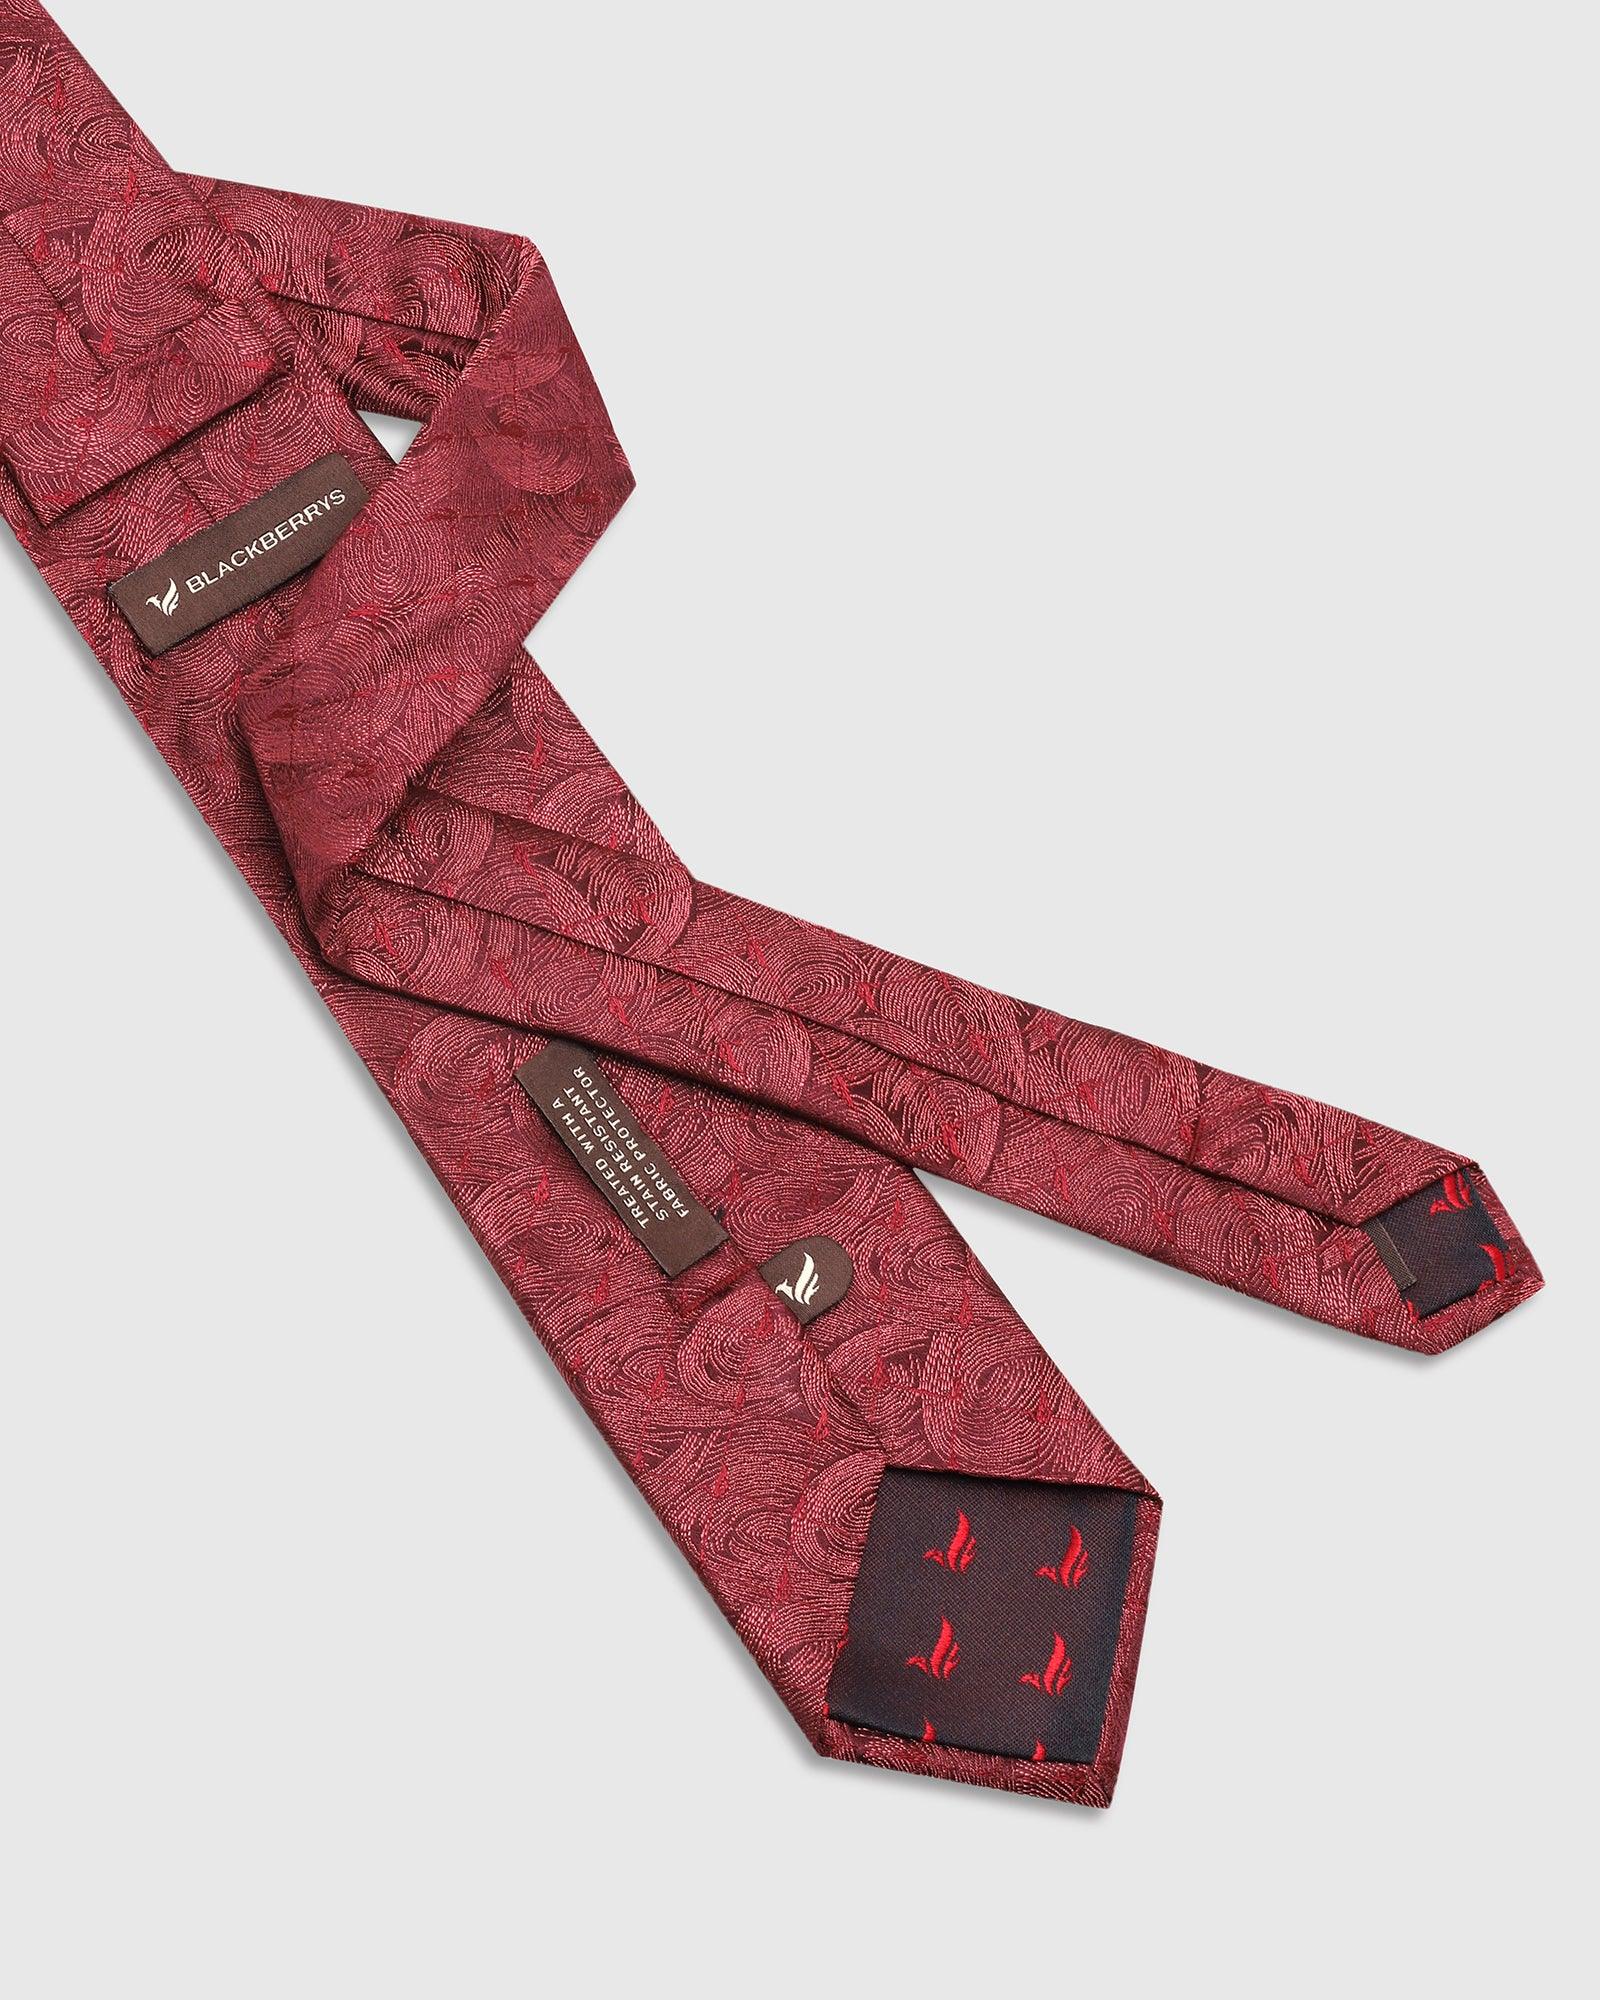 Printed Tie In Maroon (Theo) - Blackberrys